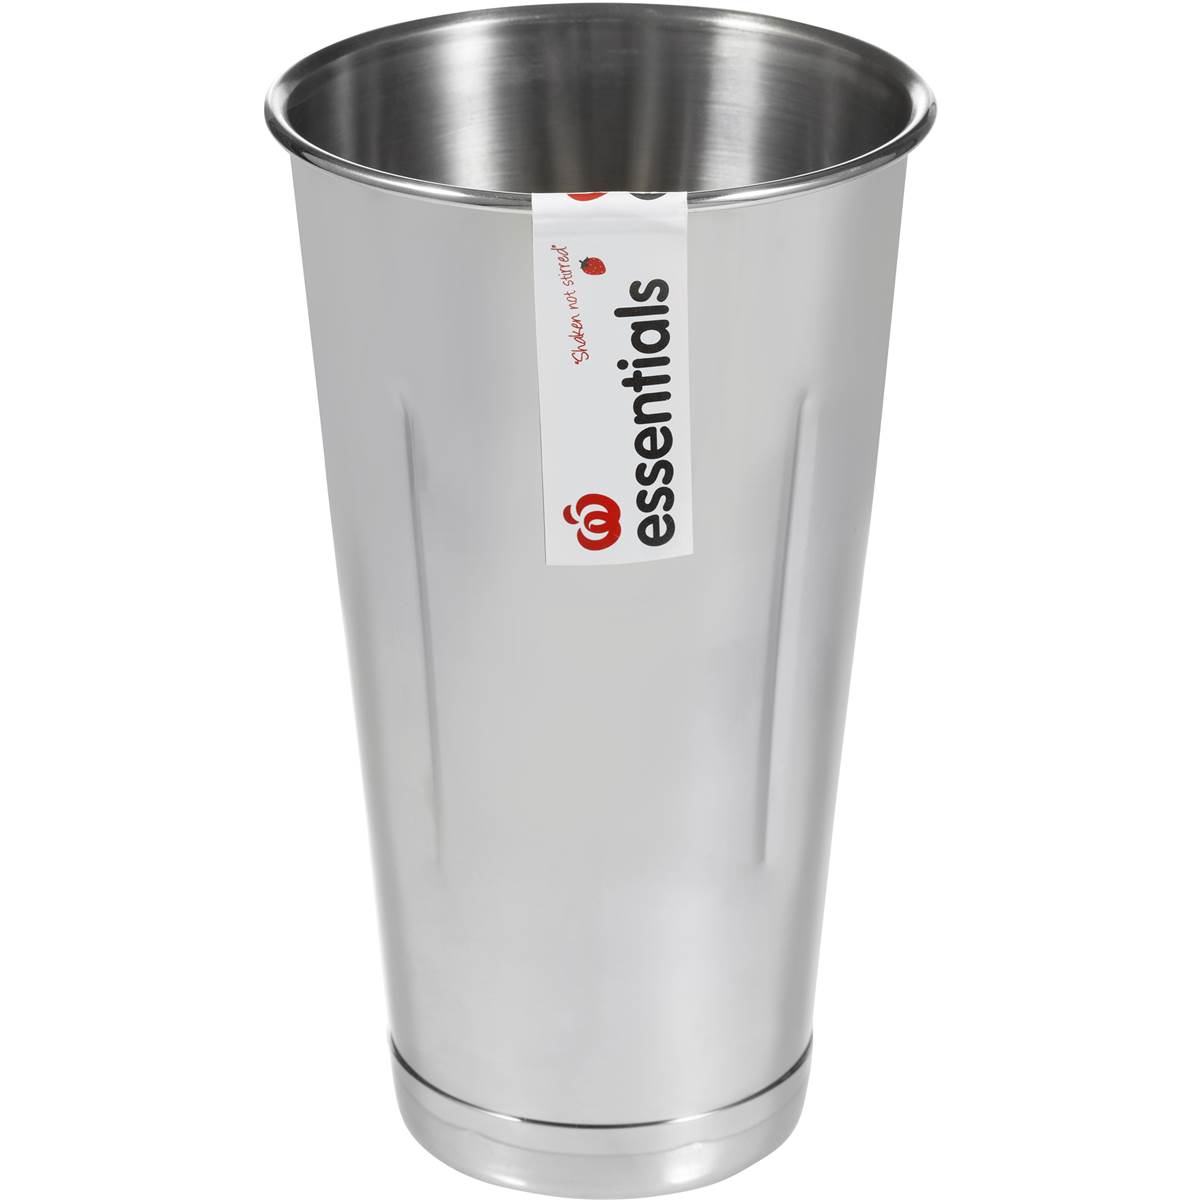 Home Essentials Utensil Milkshake Cup Stainless Steel